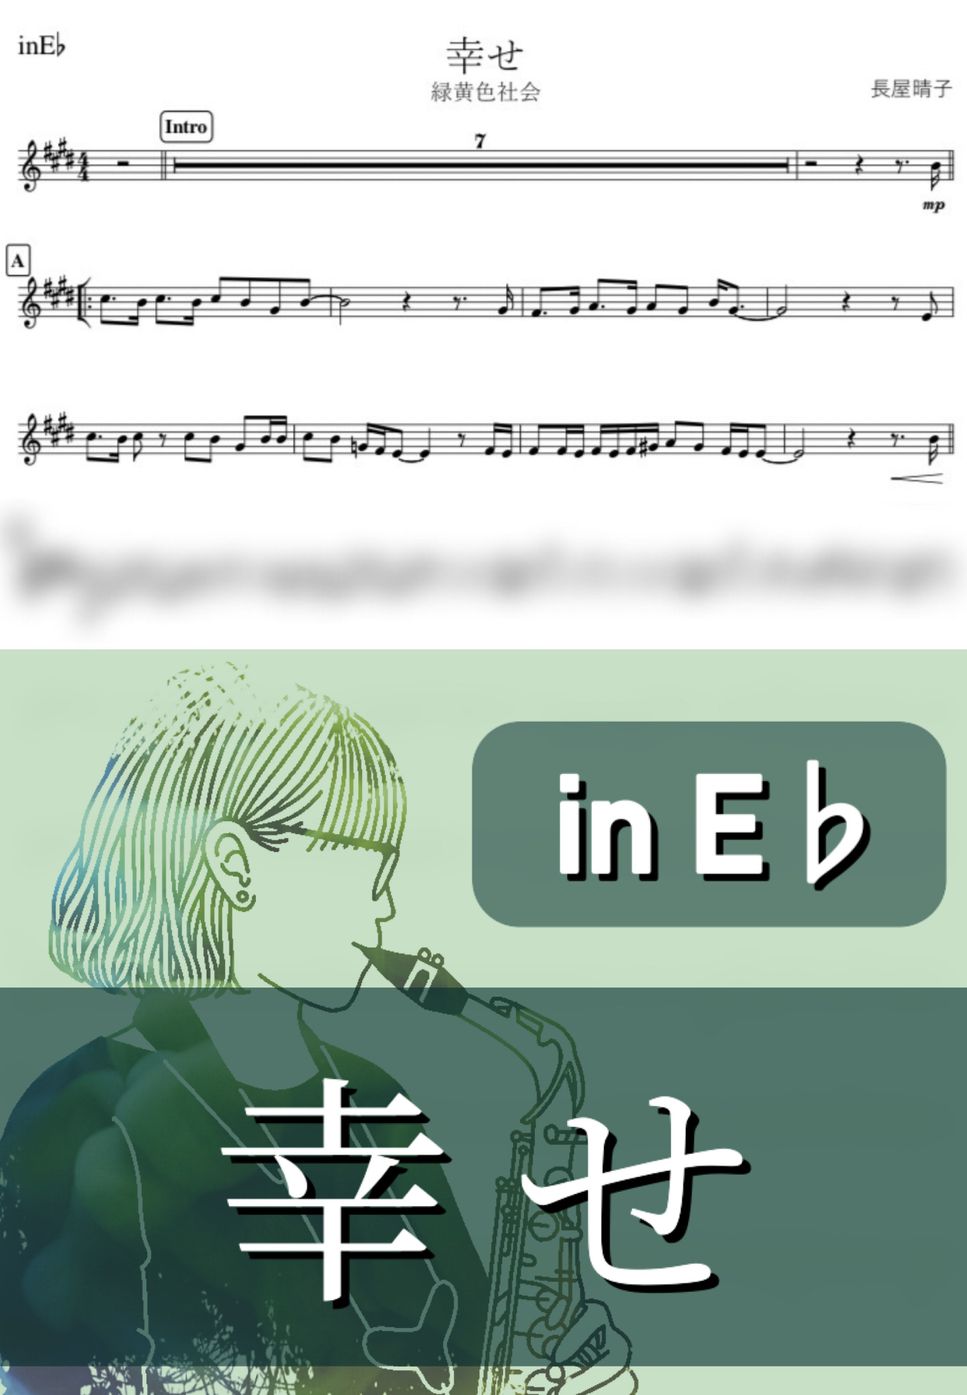 緑黄色社会 - 幸せ (E♭) by kanamusic